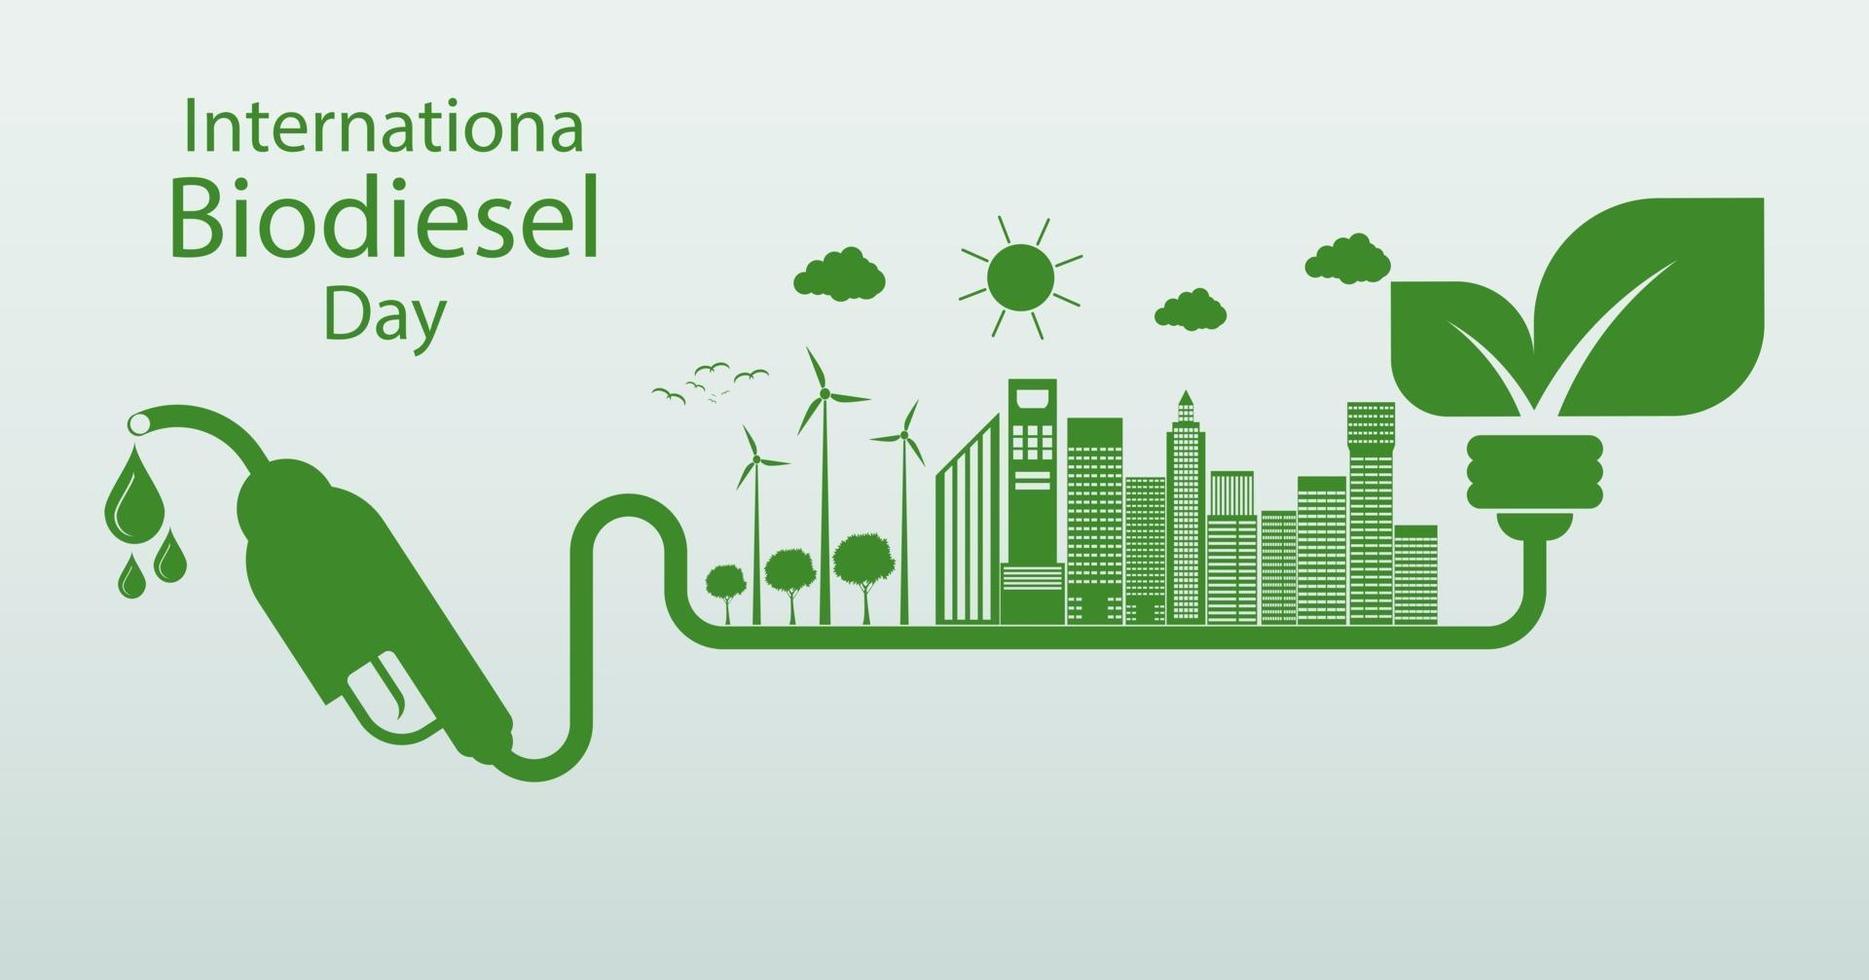 día internacional del biodiesel 10 de agosto para la ecología y el medio ambiente ayudar al mundo con ideas ecológicas vector